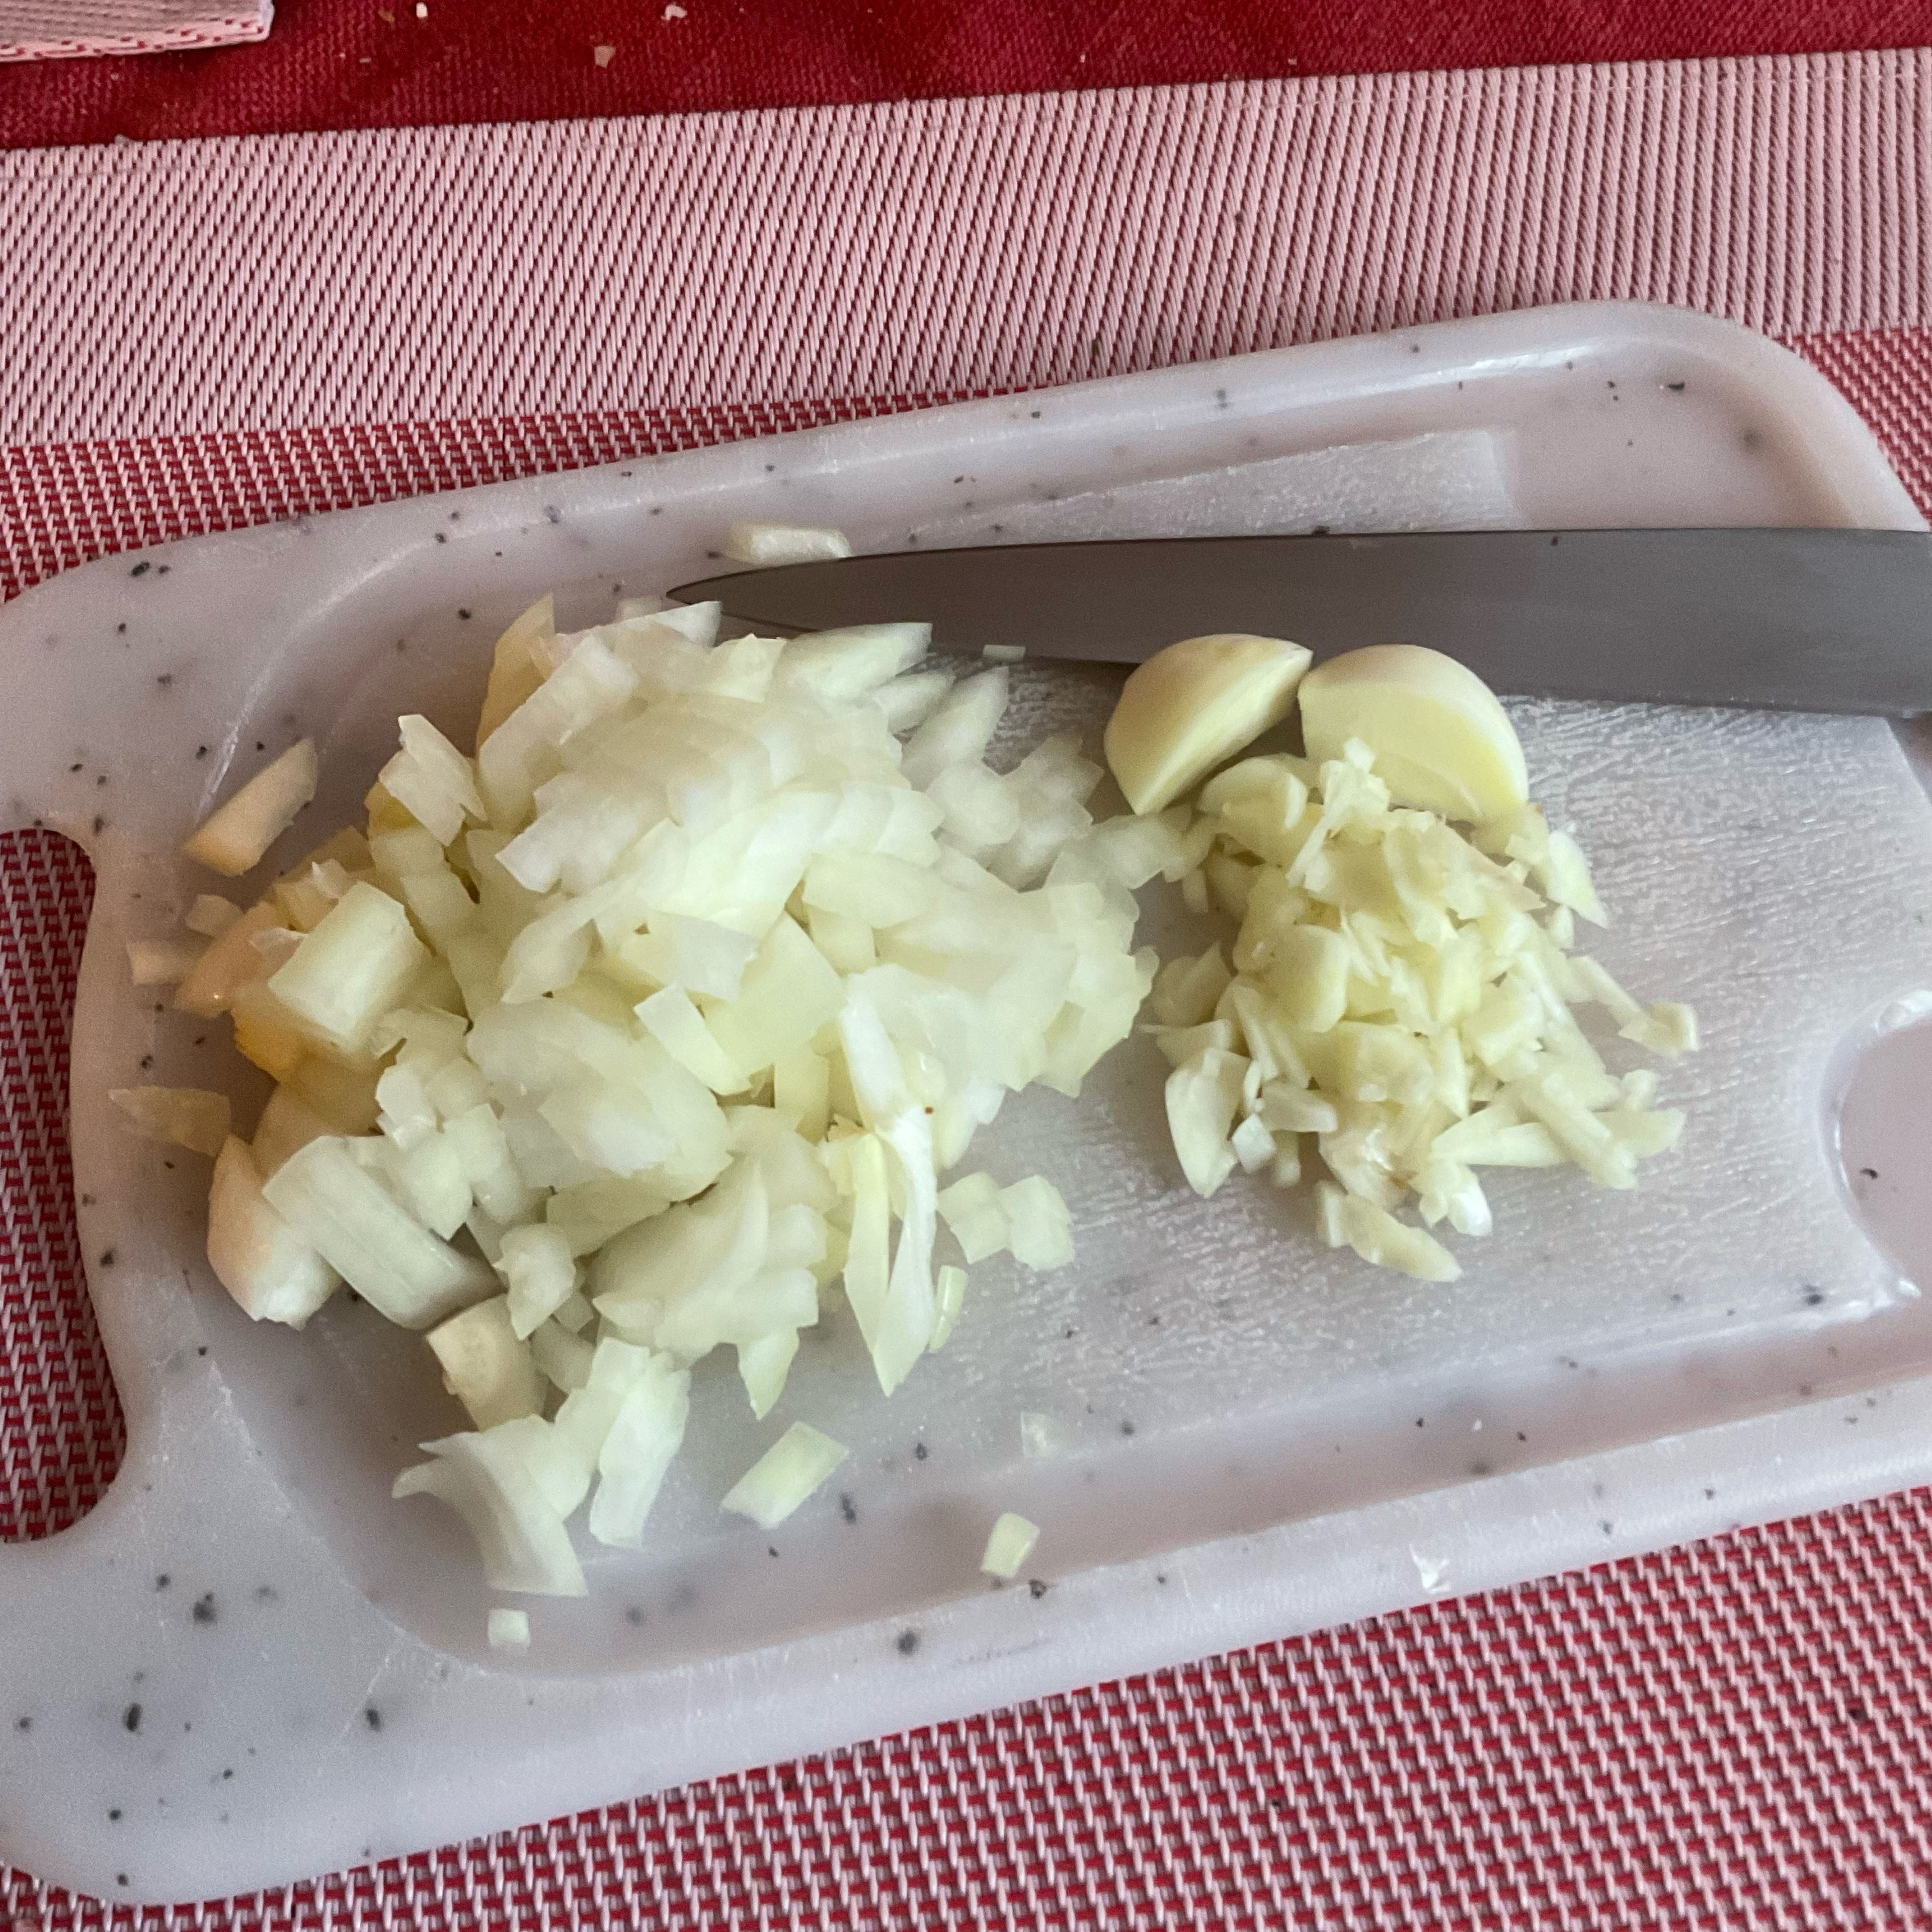 Die Zwiebel fein würfeln, den Knoblauch fein schneiden, nicht quetschen, da sonst die schwefelhaltigen Inhaltsstoffe Allin u. a. abgebaut werden - schmeckt nicht mehr so gut. Weils sehr frische und große Knoblauchzehen sind vom Kartoffelbauern, nehm ich nur 3 Stück. Im Winter könnens schon 4-5 Zehen sein 👨‍🍳🤤